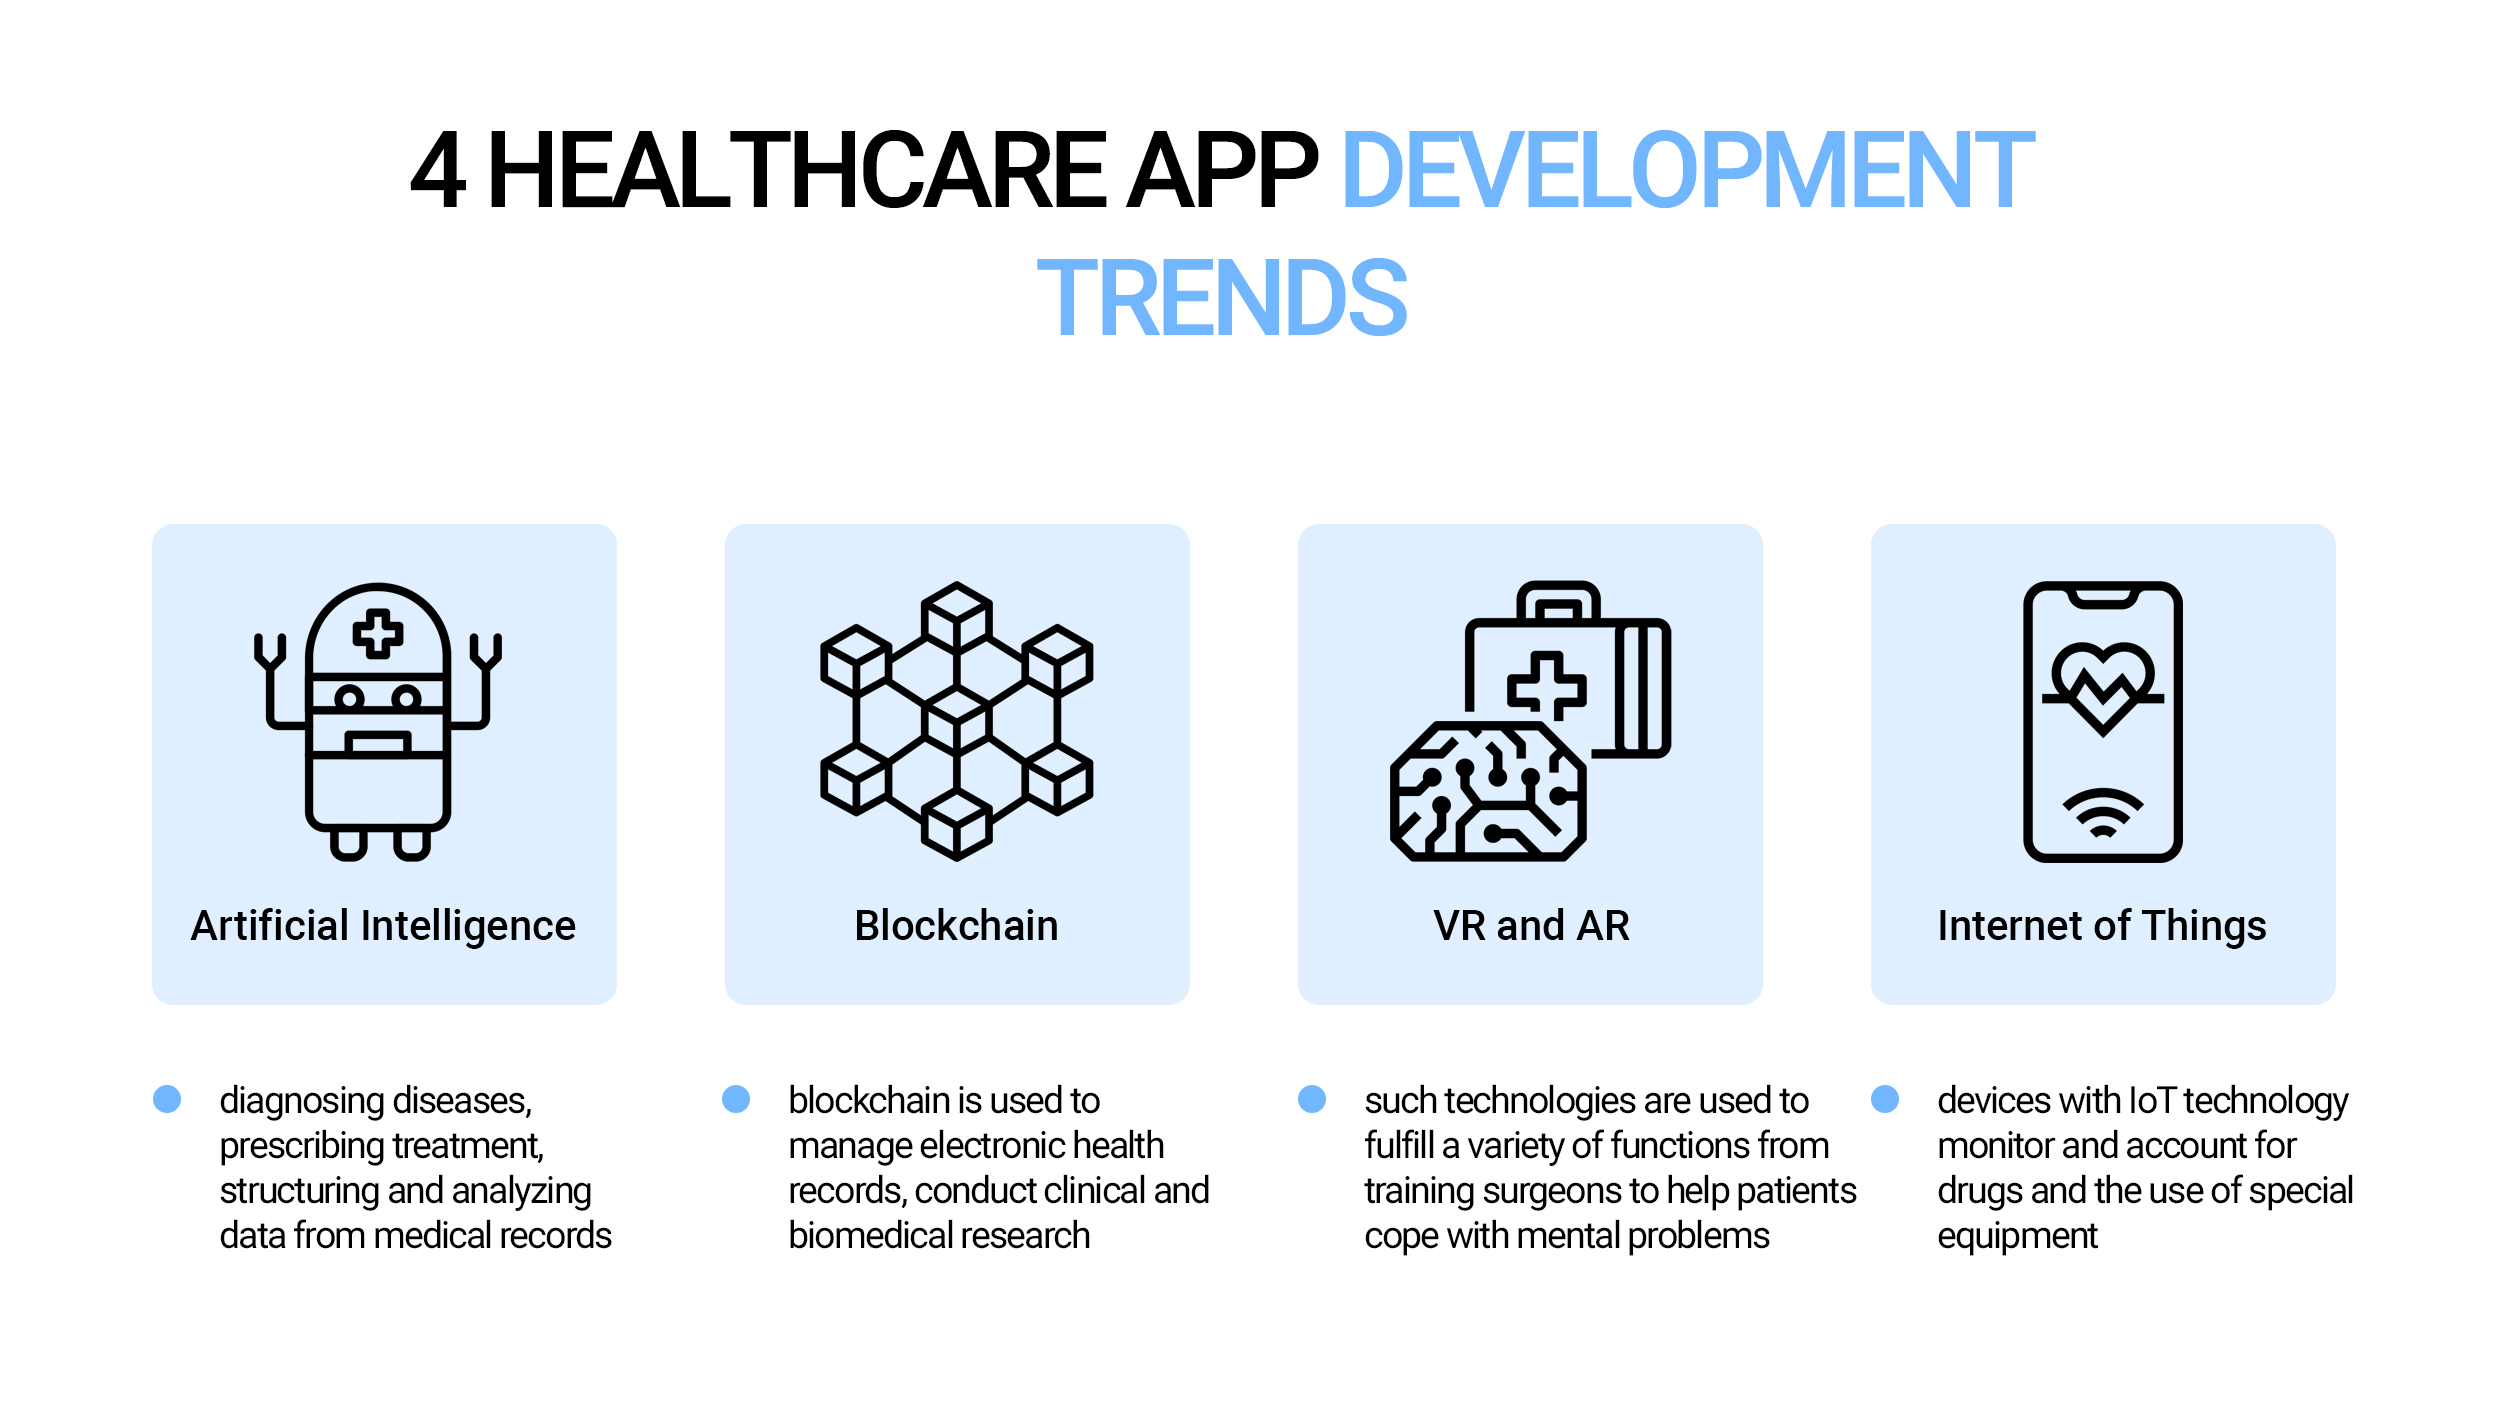 4 Healthcare App Development Trends